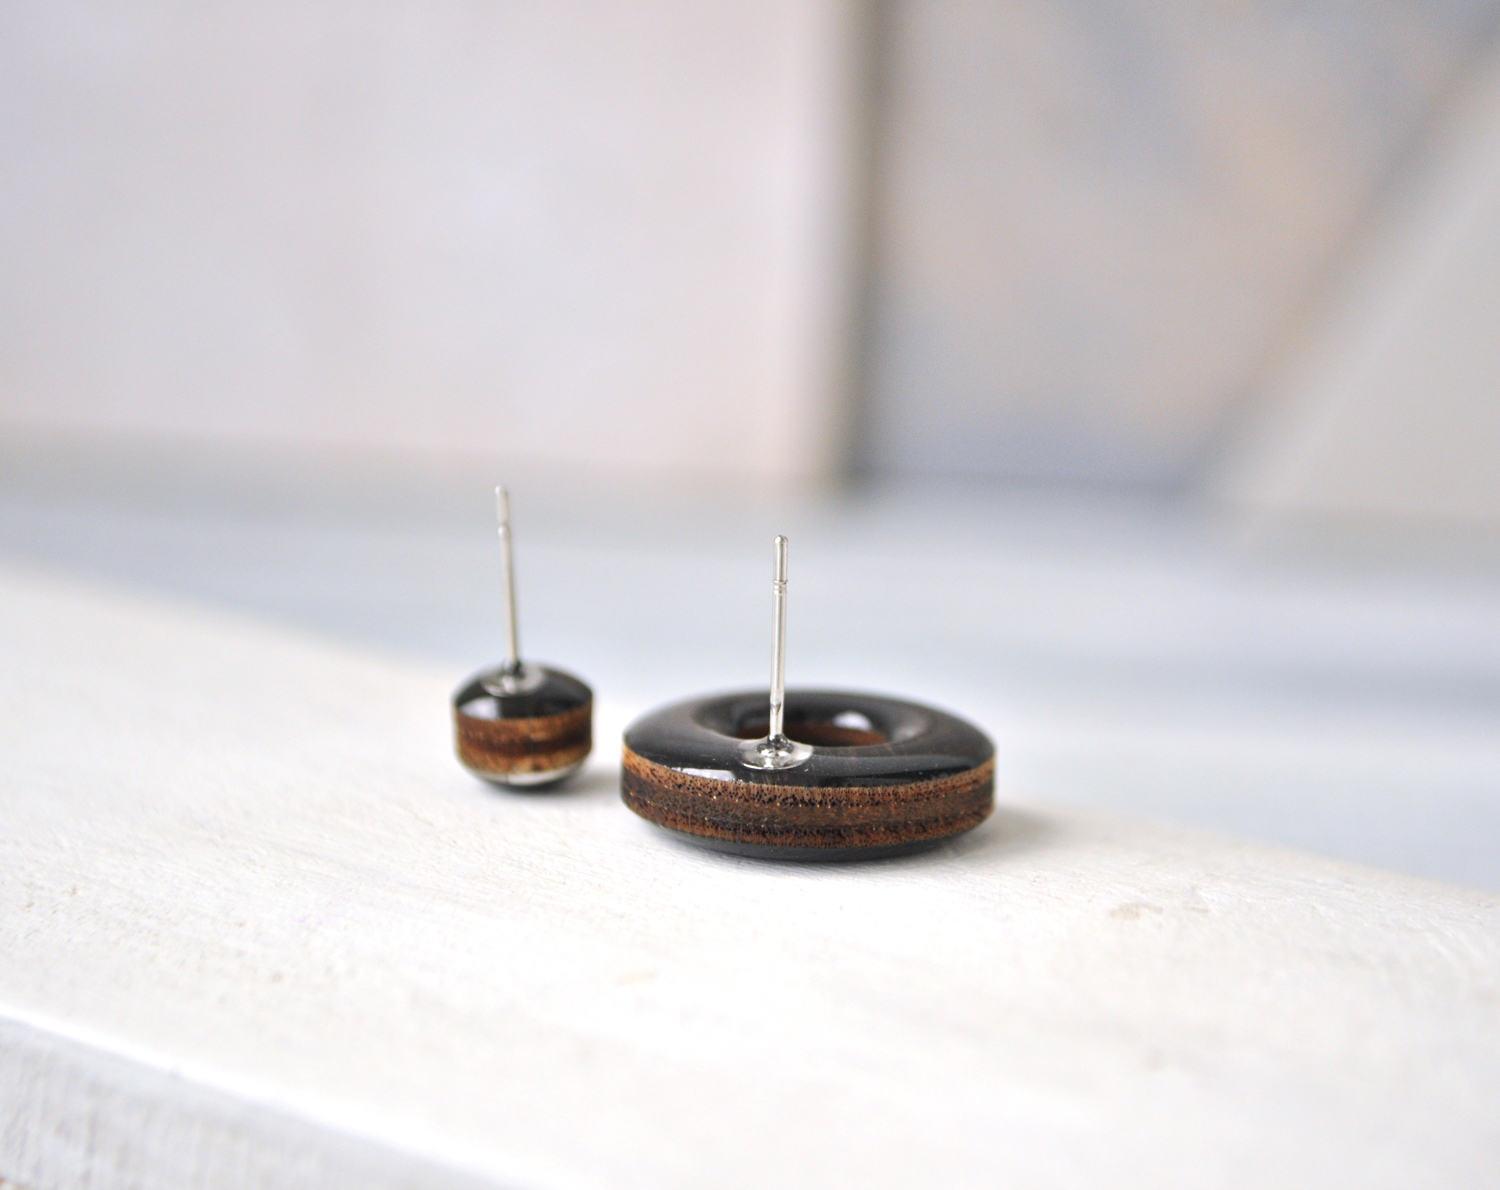 Black wood - малый бублик серьги-гвоздики деревянные ручной работы купить